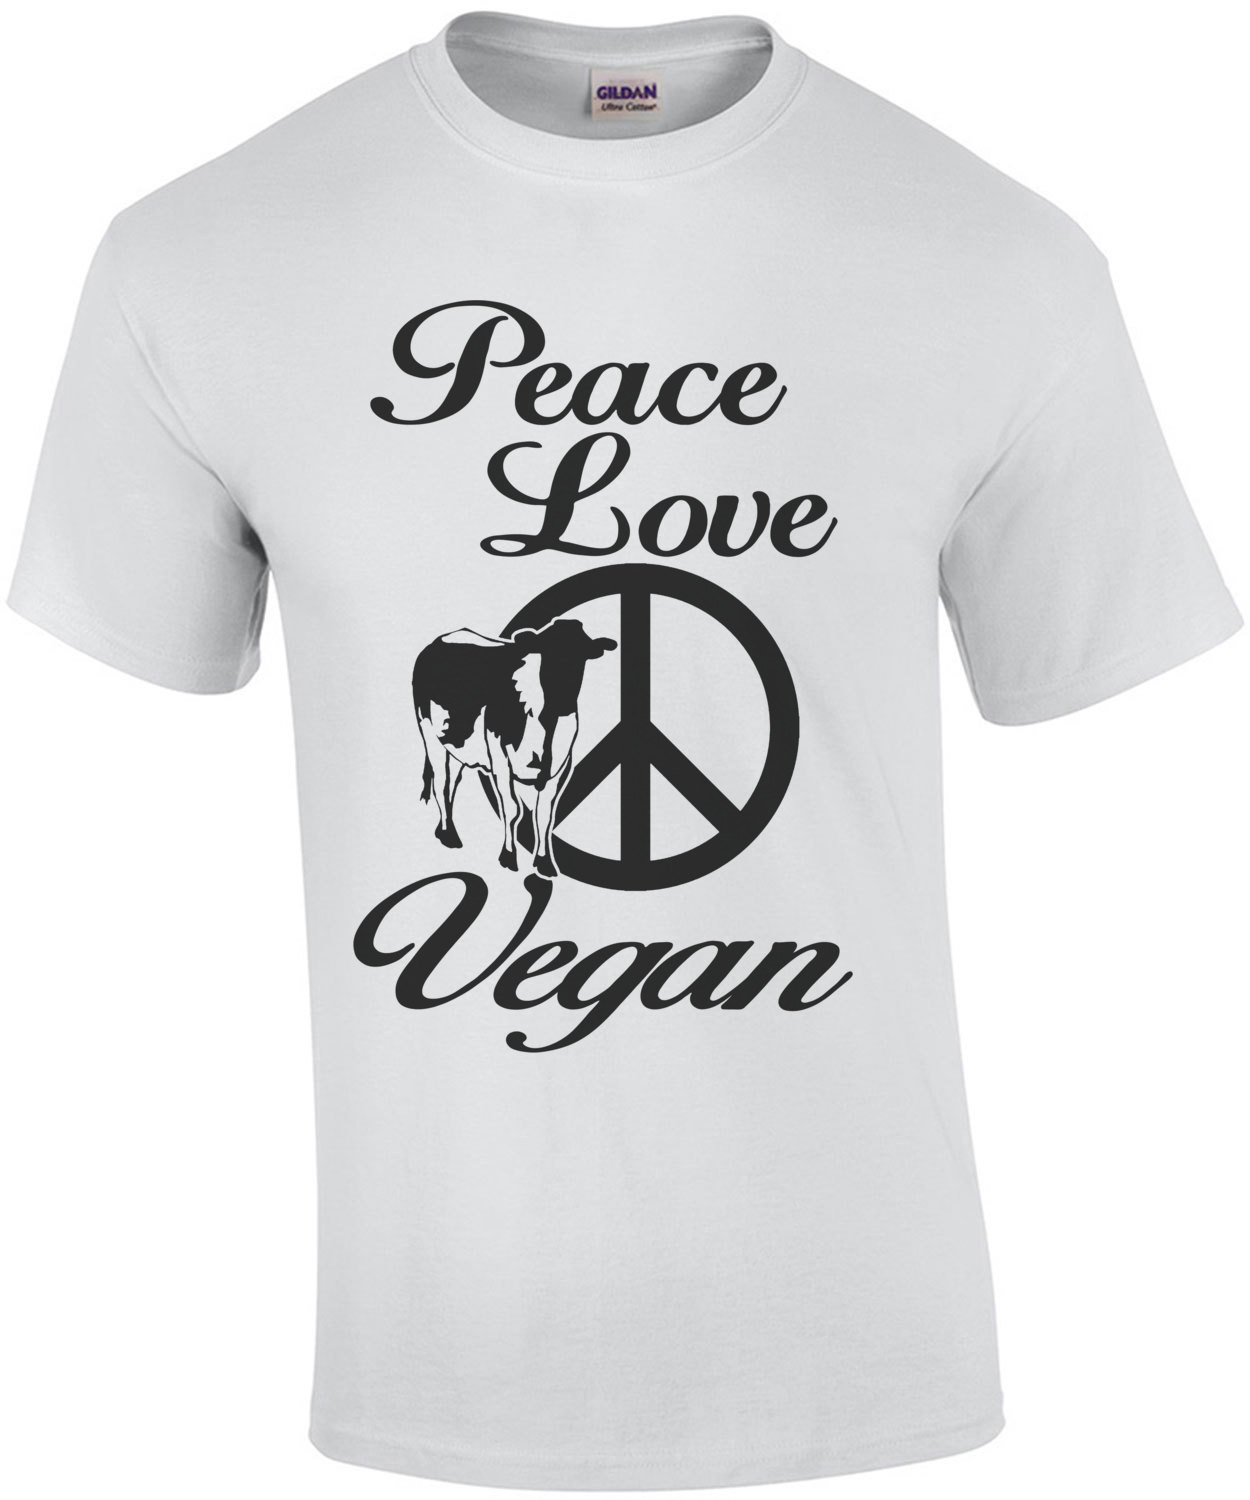 Peace Love Vegan T-Shirt